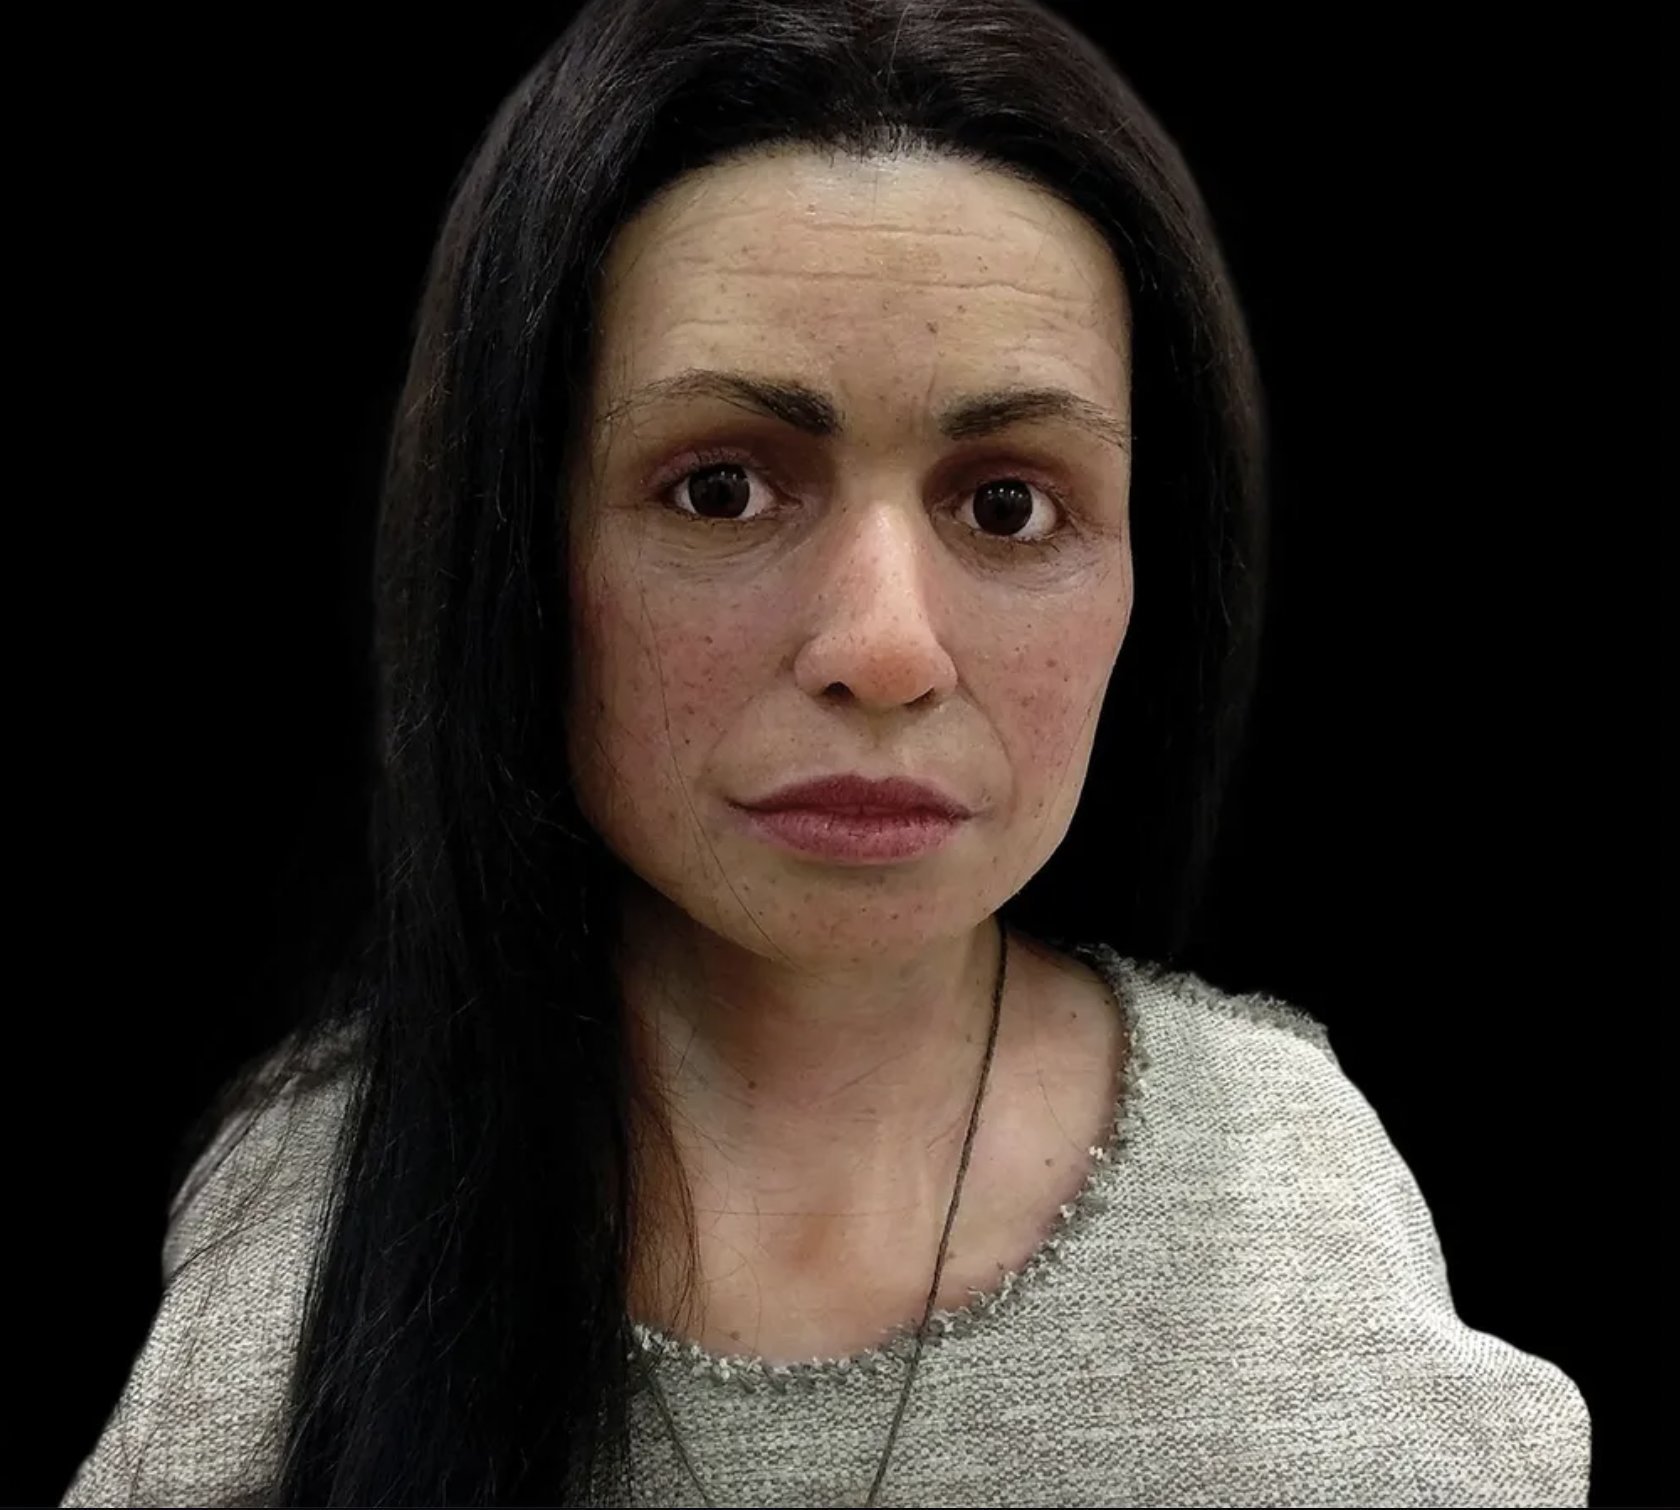 [ALERTE] Le visage d'une femme du Néolithique reconstitué en 3D ! sur ...